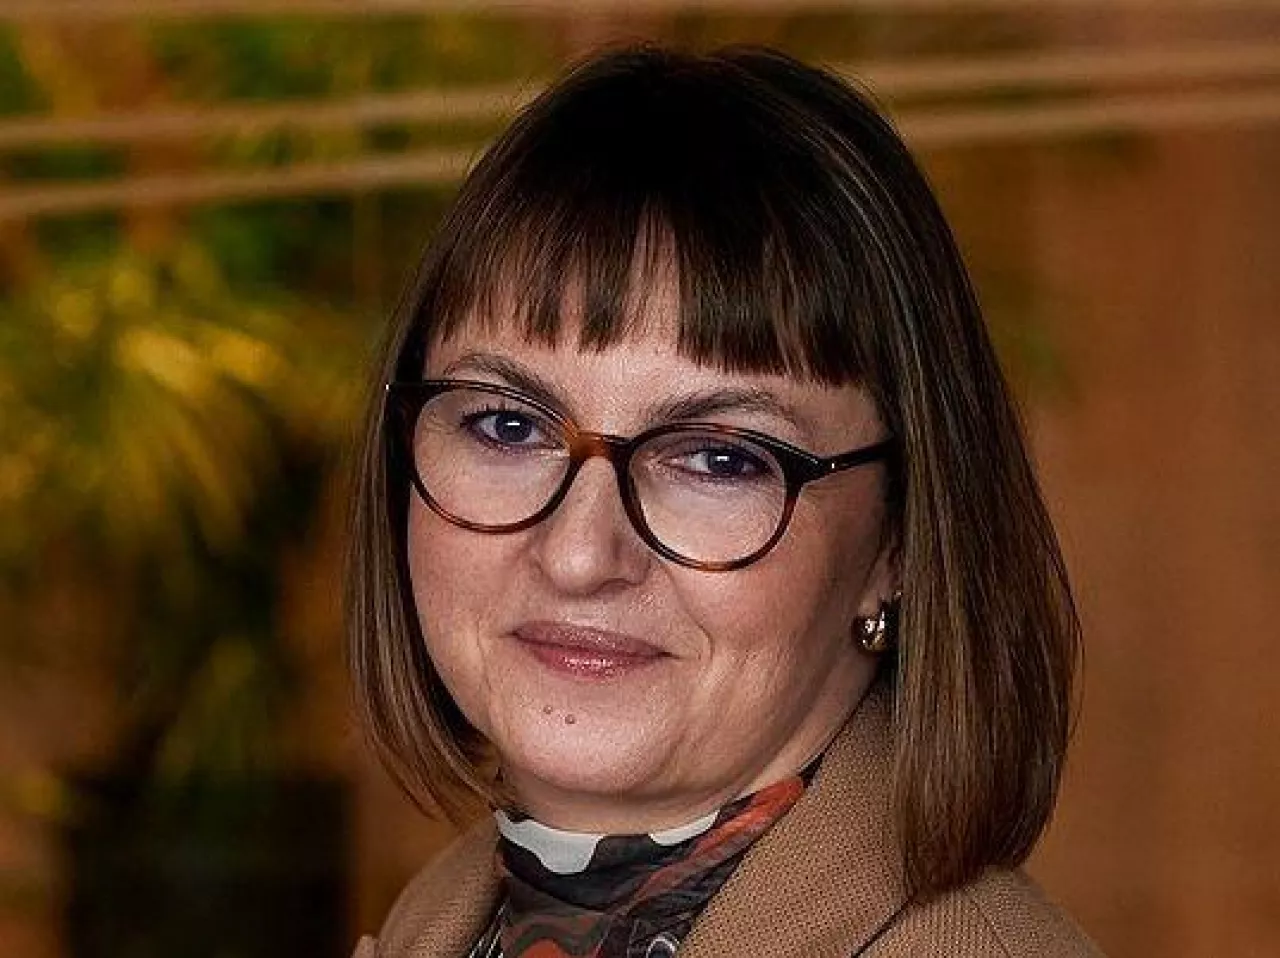 &lt;p&gt;Izabella Rokicka, dyrektorka komunikacji, zrównoważonego rozwoju i public affairs Carrefour Polska (fot. Carrefour Polska)&lt;/p&gt;